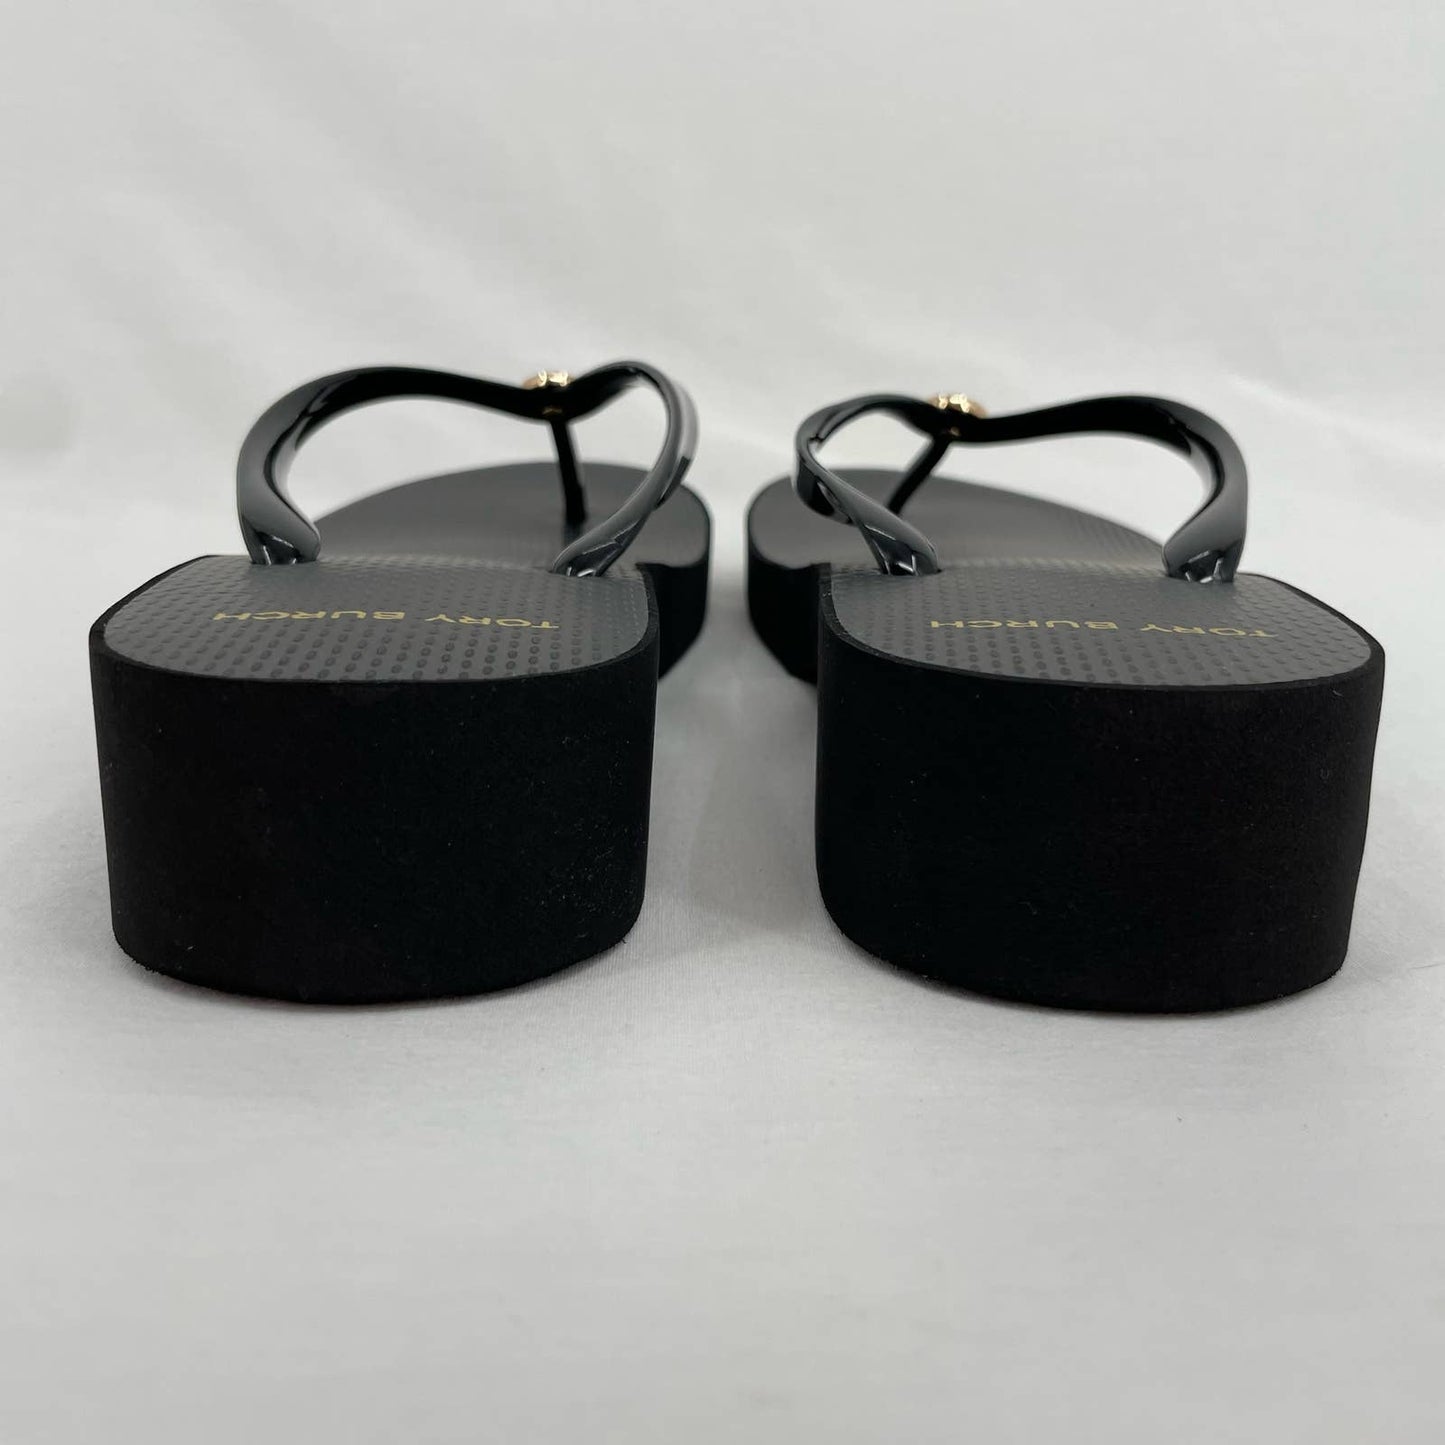 Tory Burch Cut Out Wedge Flip Flop Black Platform Thong Sandals Summer Beach Size 11